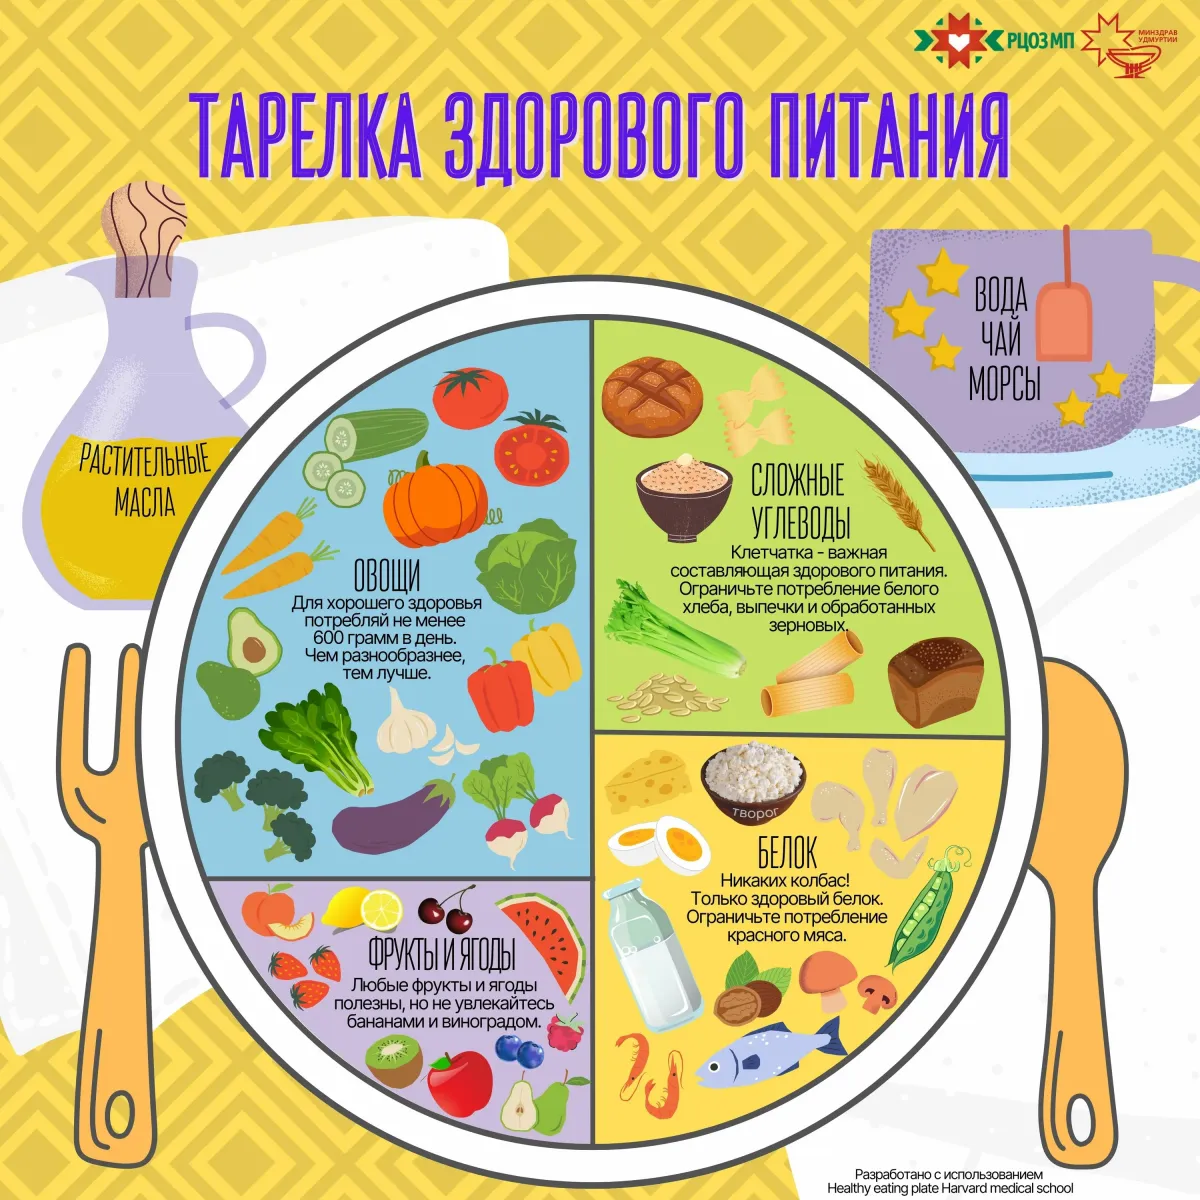 Основы здорового питания 2024 ответы. Тарелка здорового питания. Плакат тарелка здорового питания. Здоровое питание АРЛКА. Питание по тарелке.